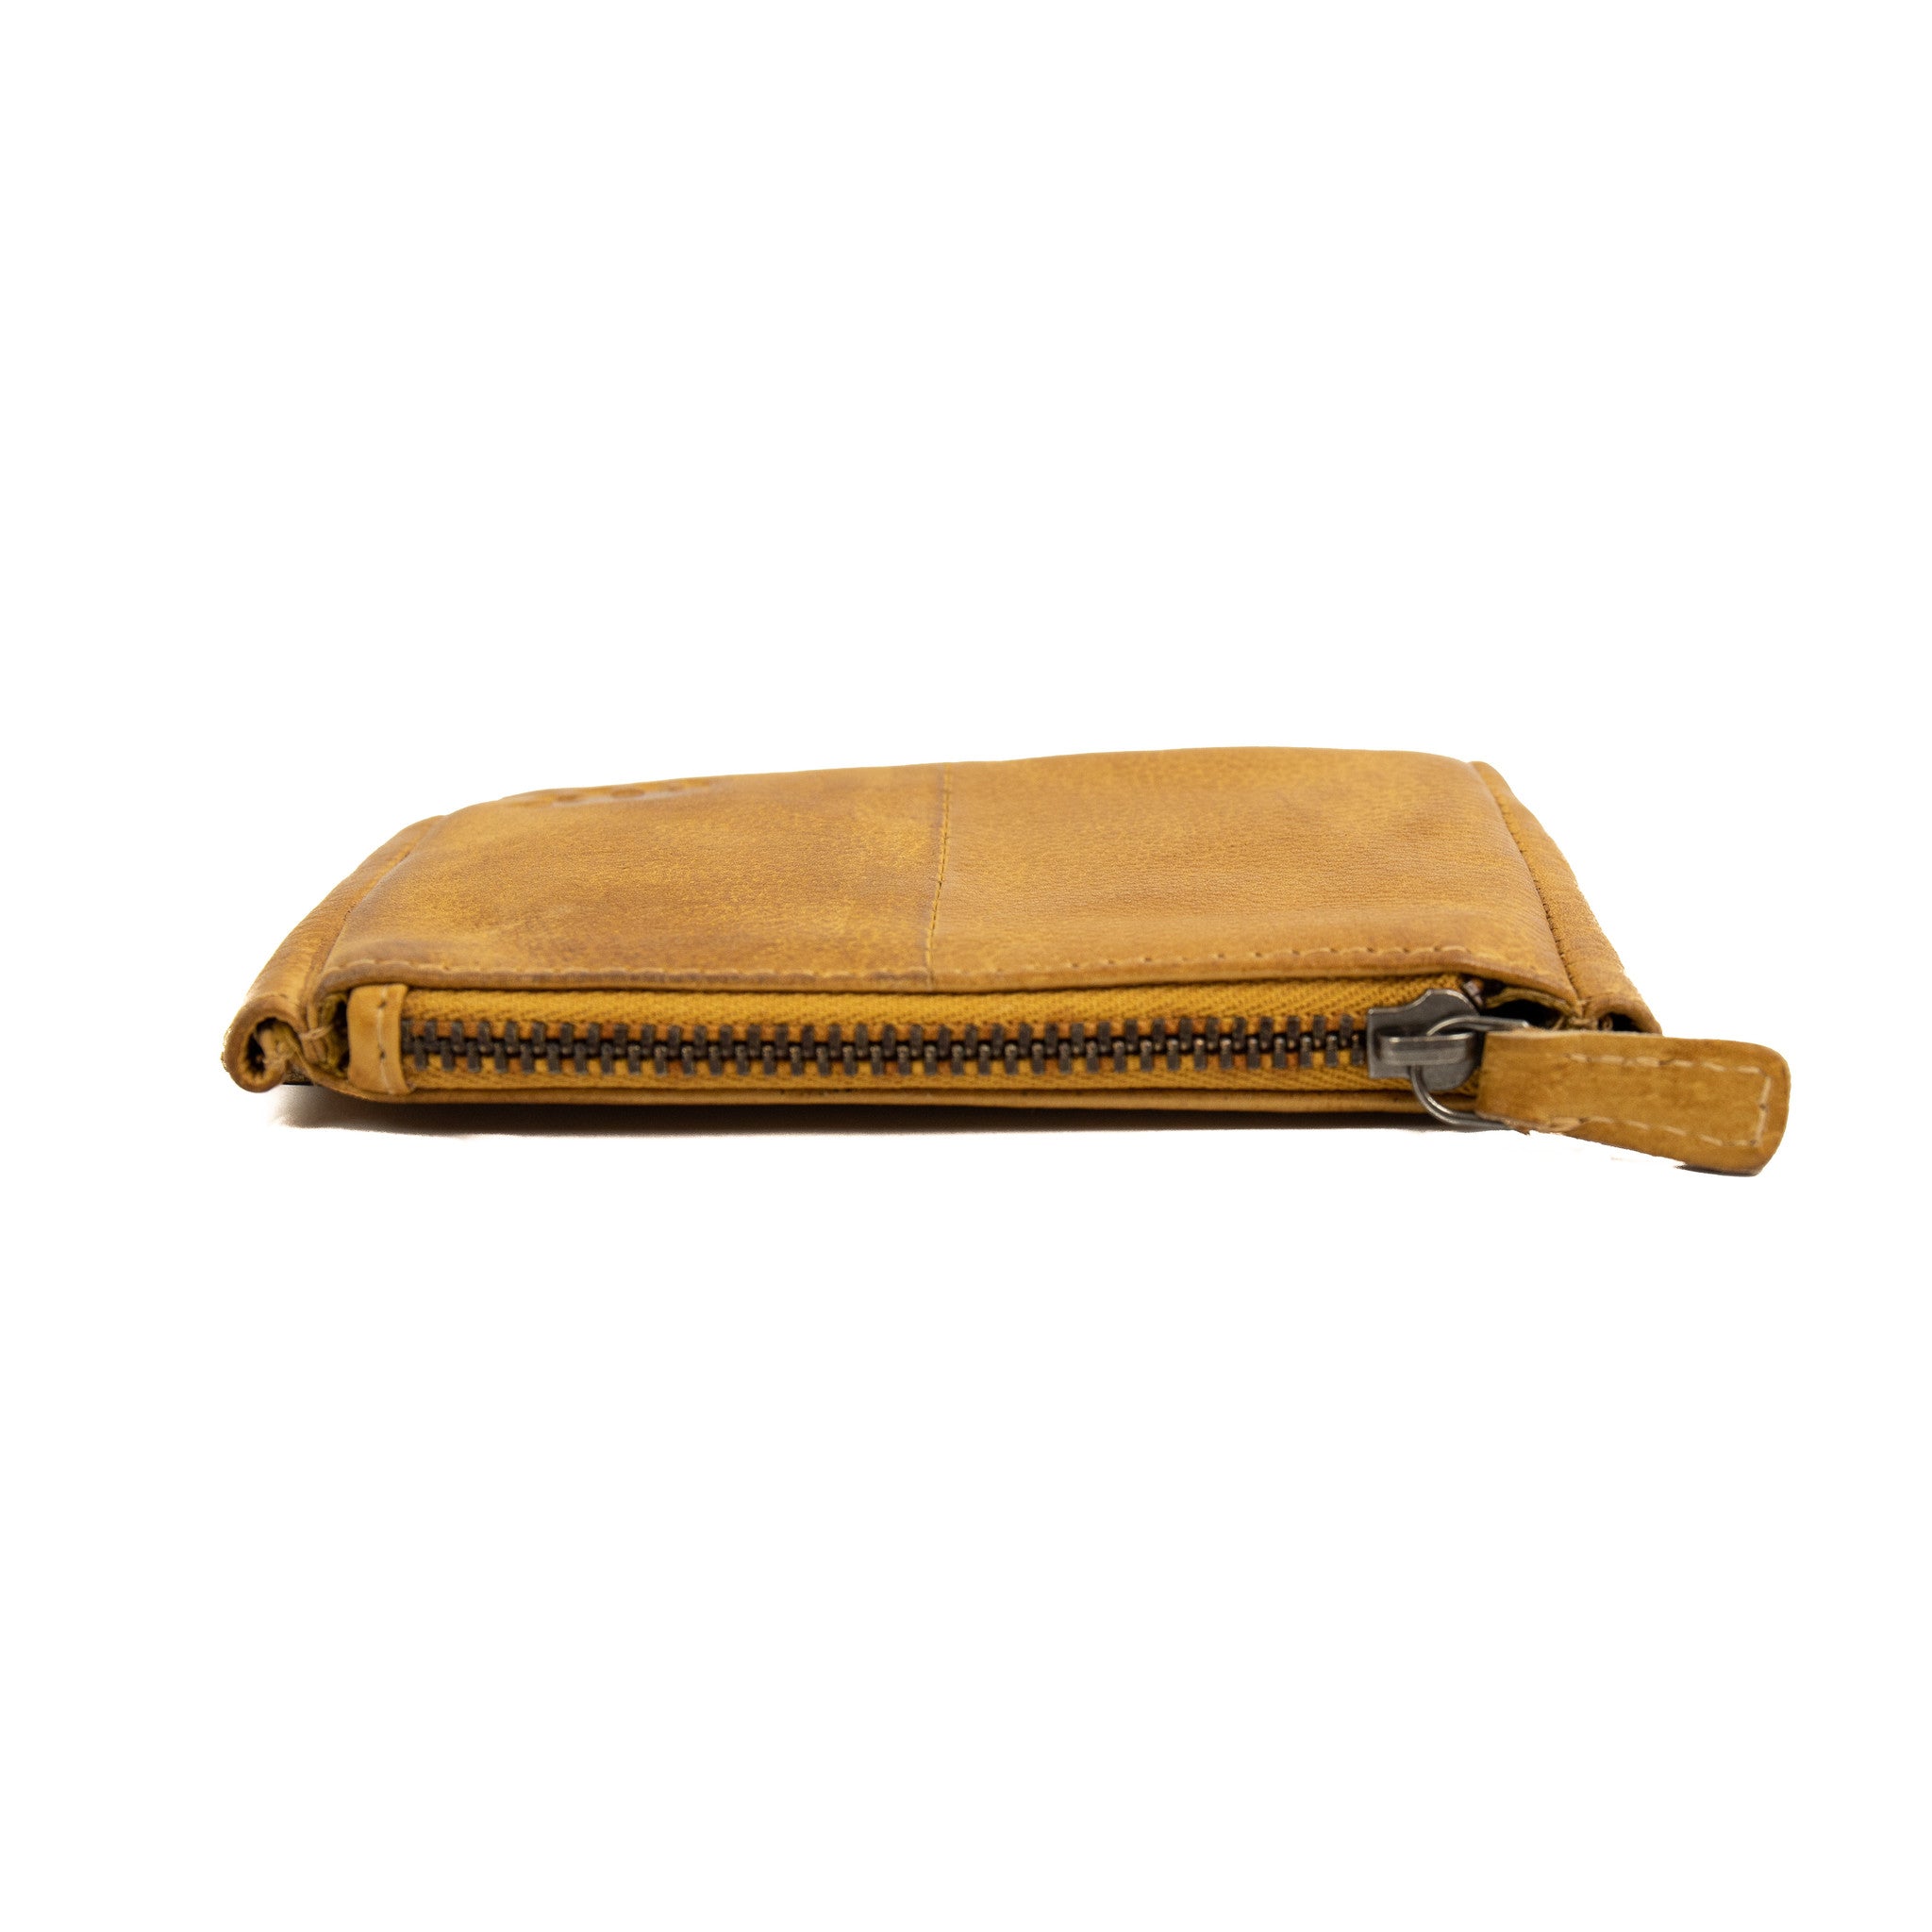 Key pouch 'Lyla' yellow - CP 7616